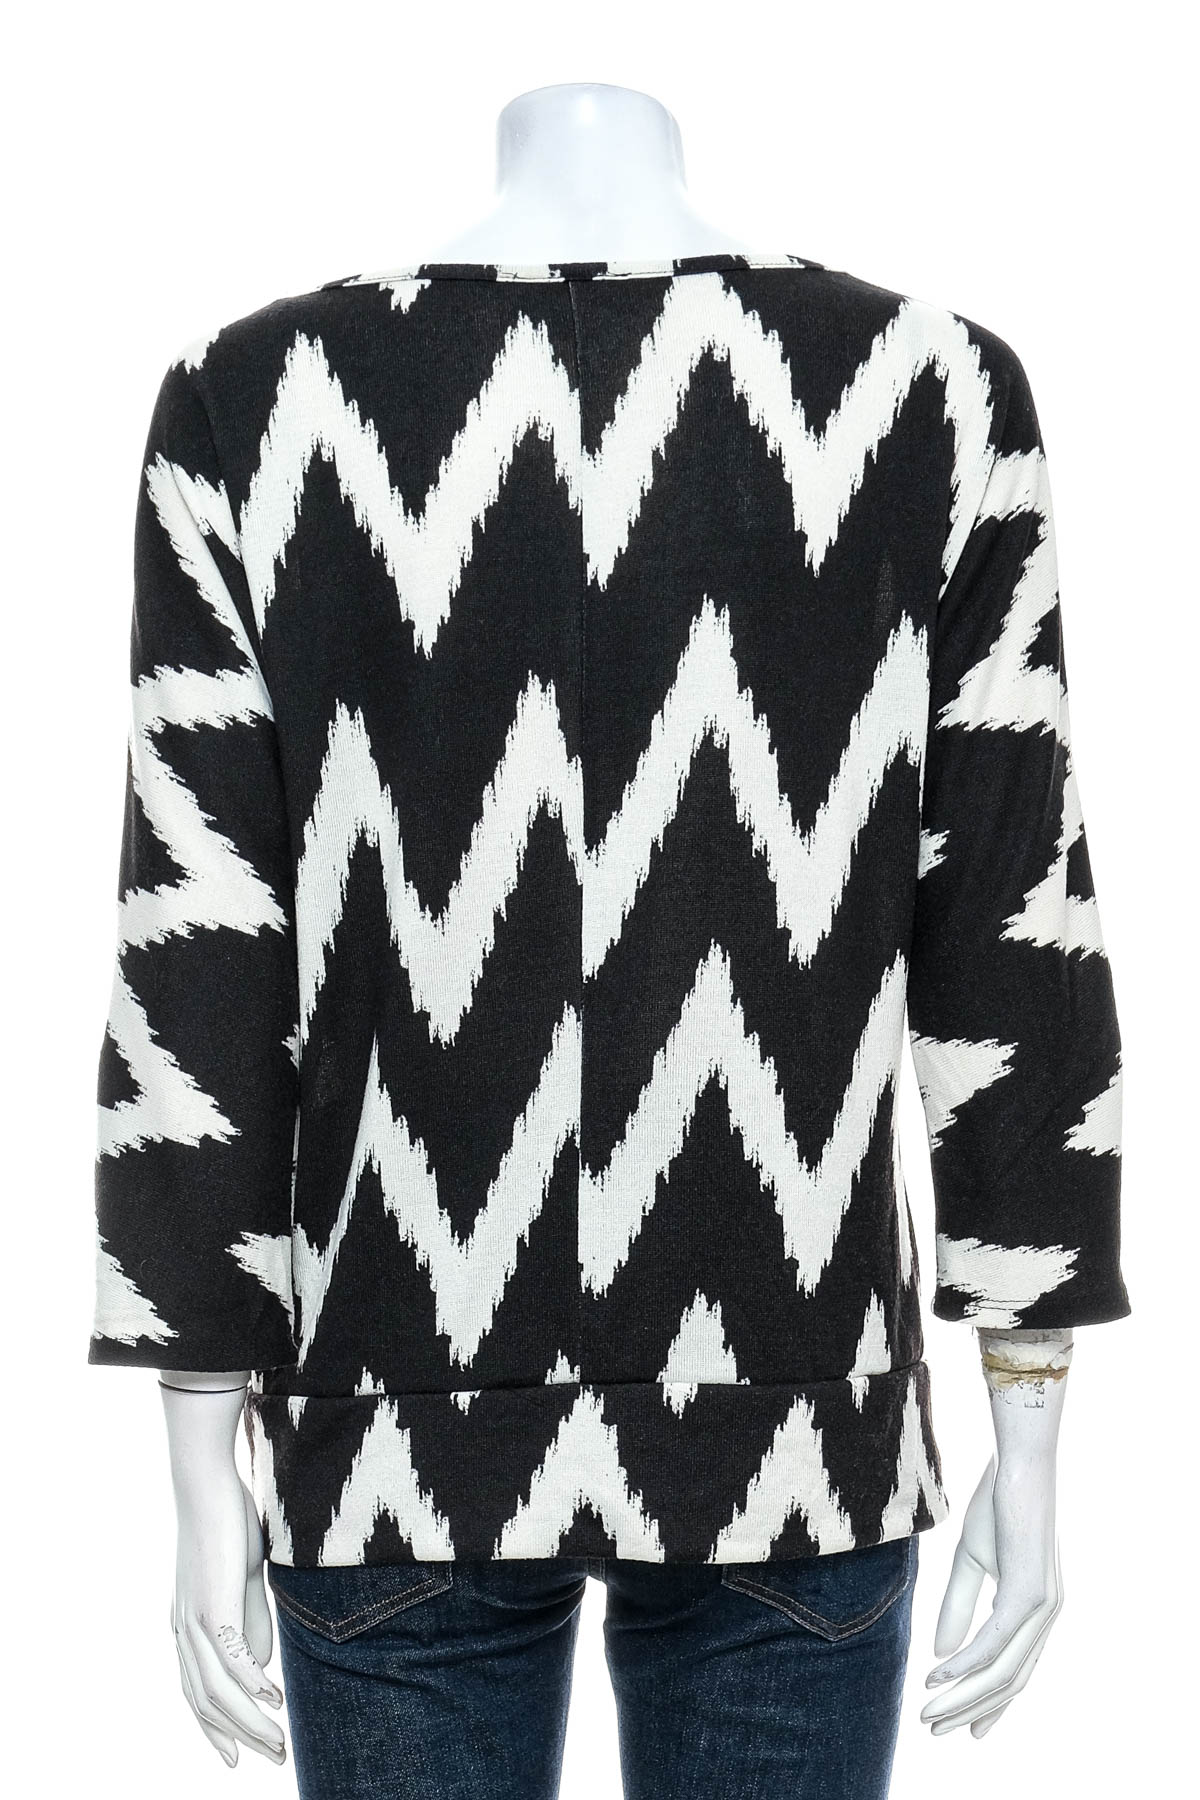 Women's sweater - AGB - 1